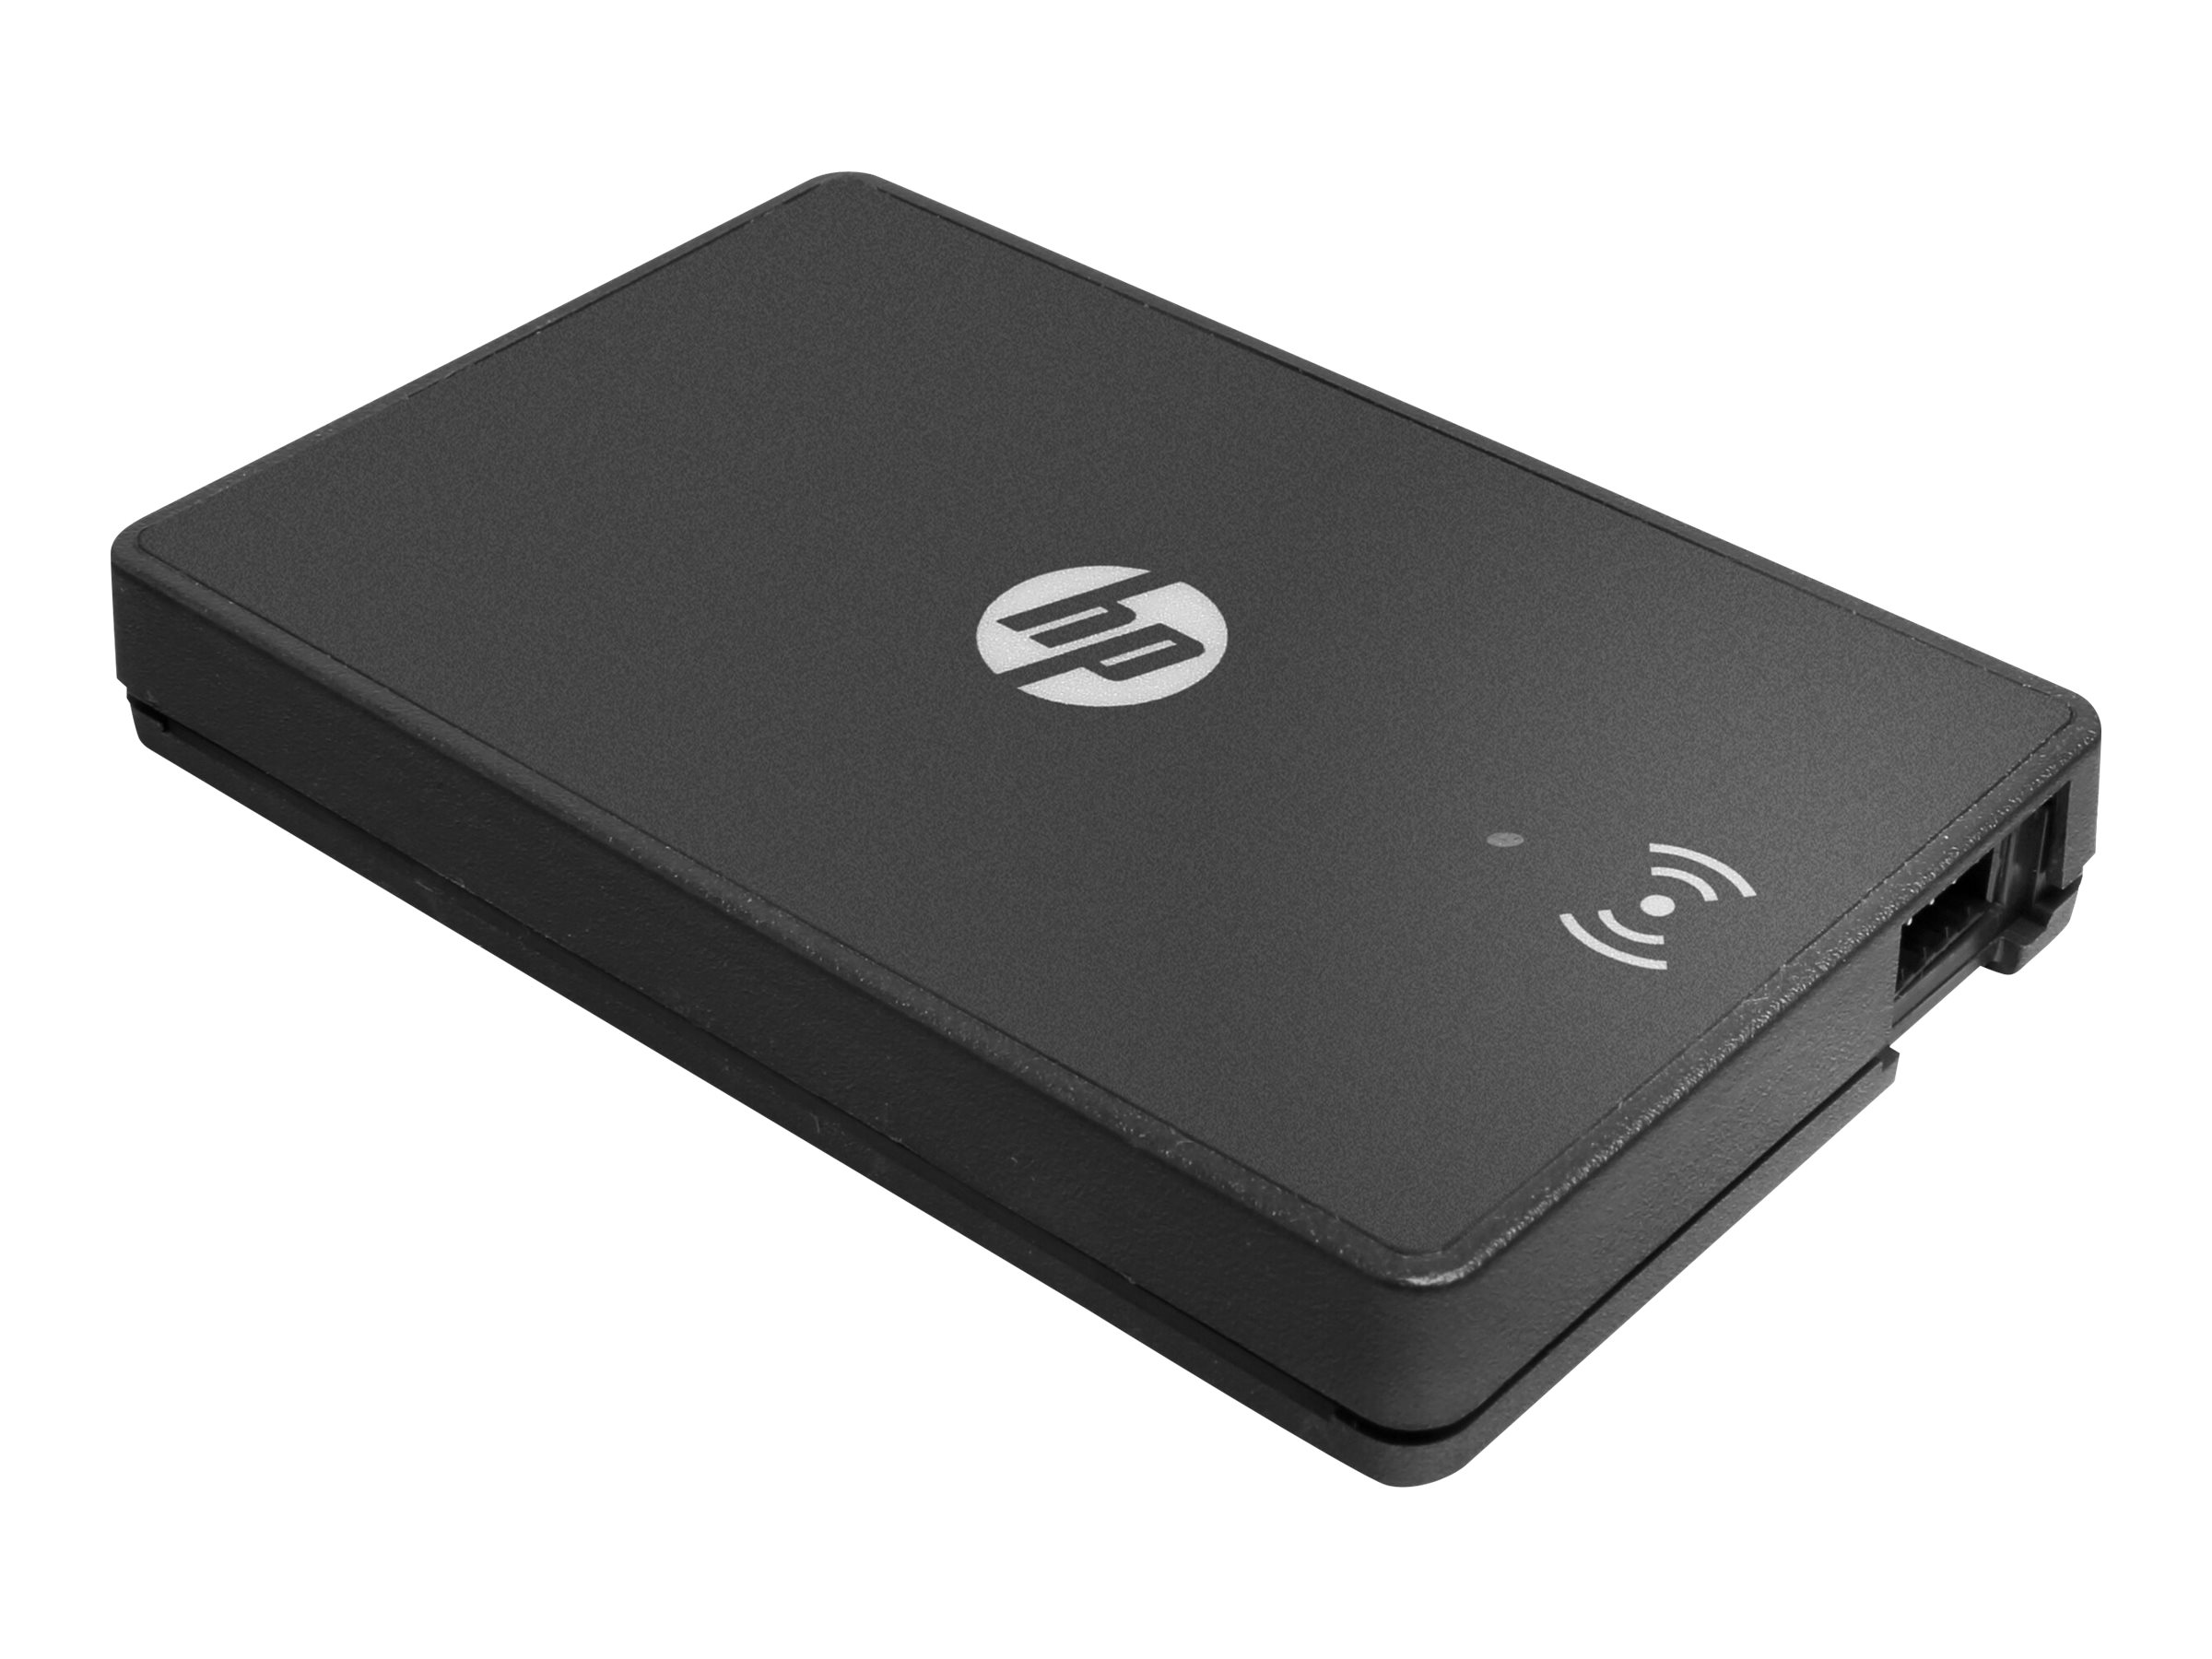 Hewlett Packard (HP) HP USB Universal Card Reader